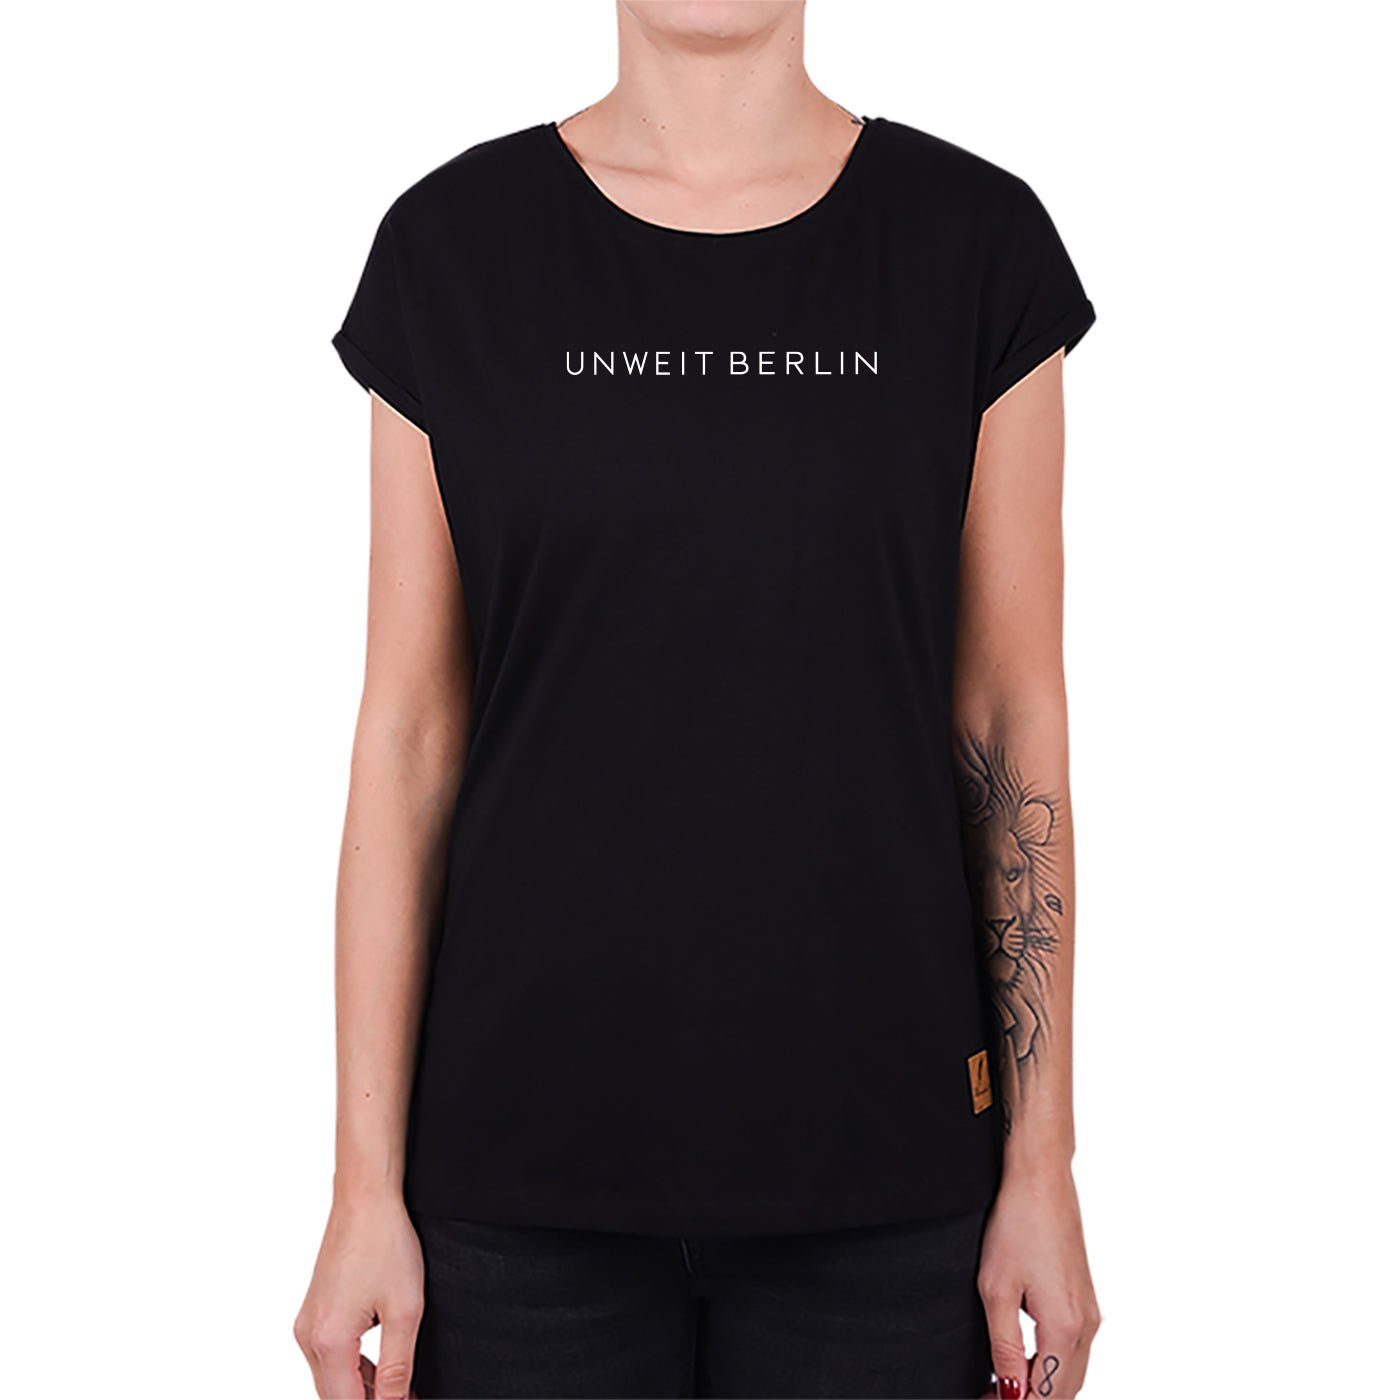 Unweit Berlin - Damen T-Shirt - Kleinigkeit - Unweit Berlin